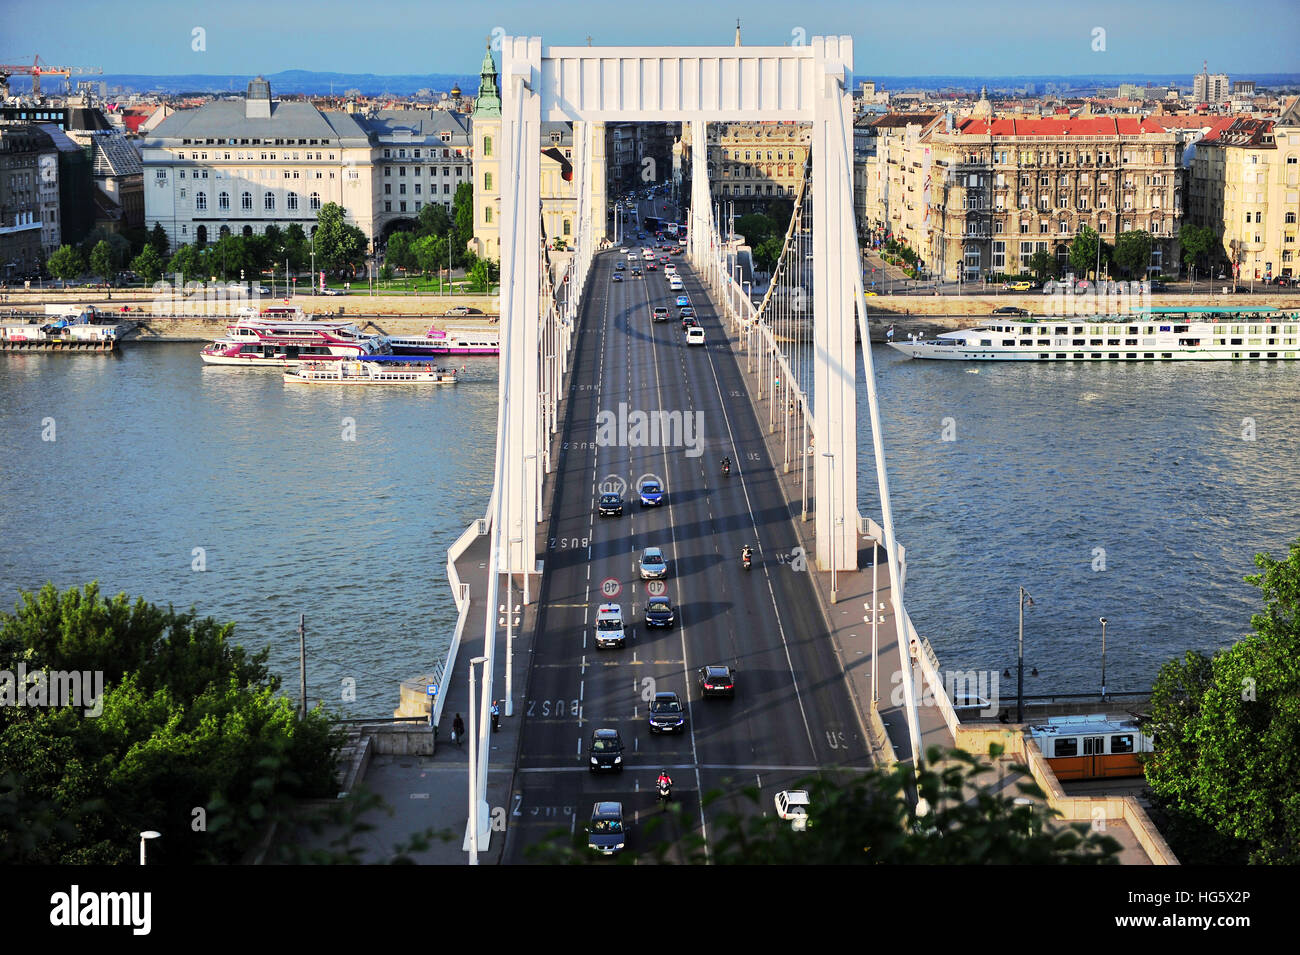 BUDAPEST, Ungarn - 23 Mai: Elisabethbrücke und Panorama von Budapest am 23. Mai 2016. Budapest ist die Hauptstadt und größte Stadt von Ungarn. Stockfoto